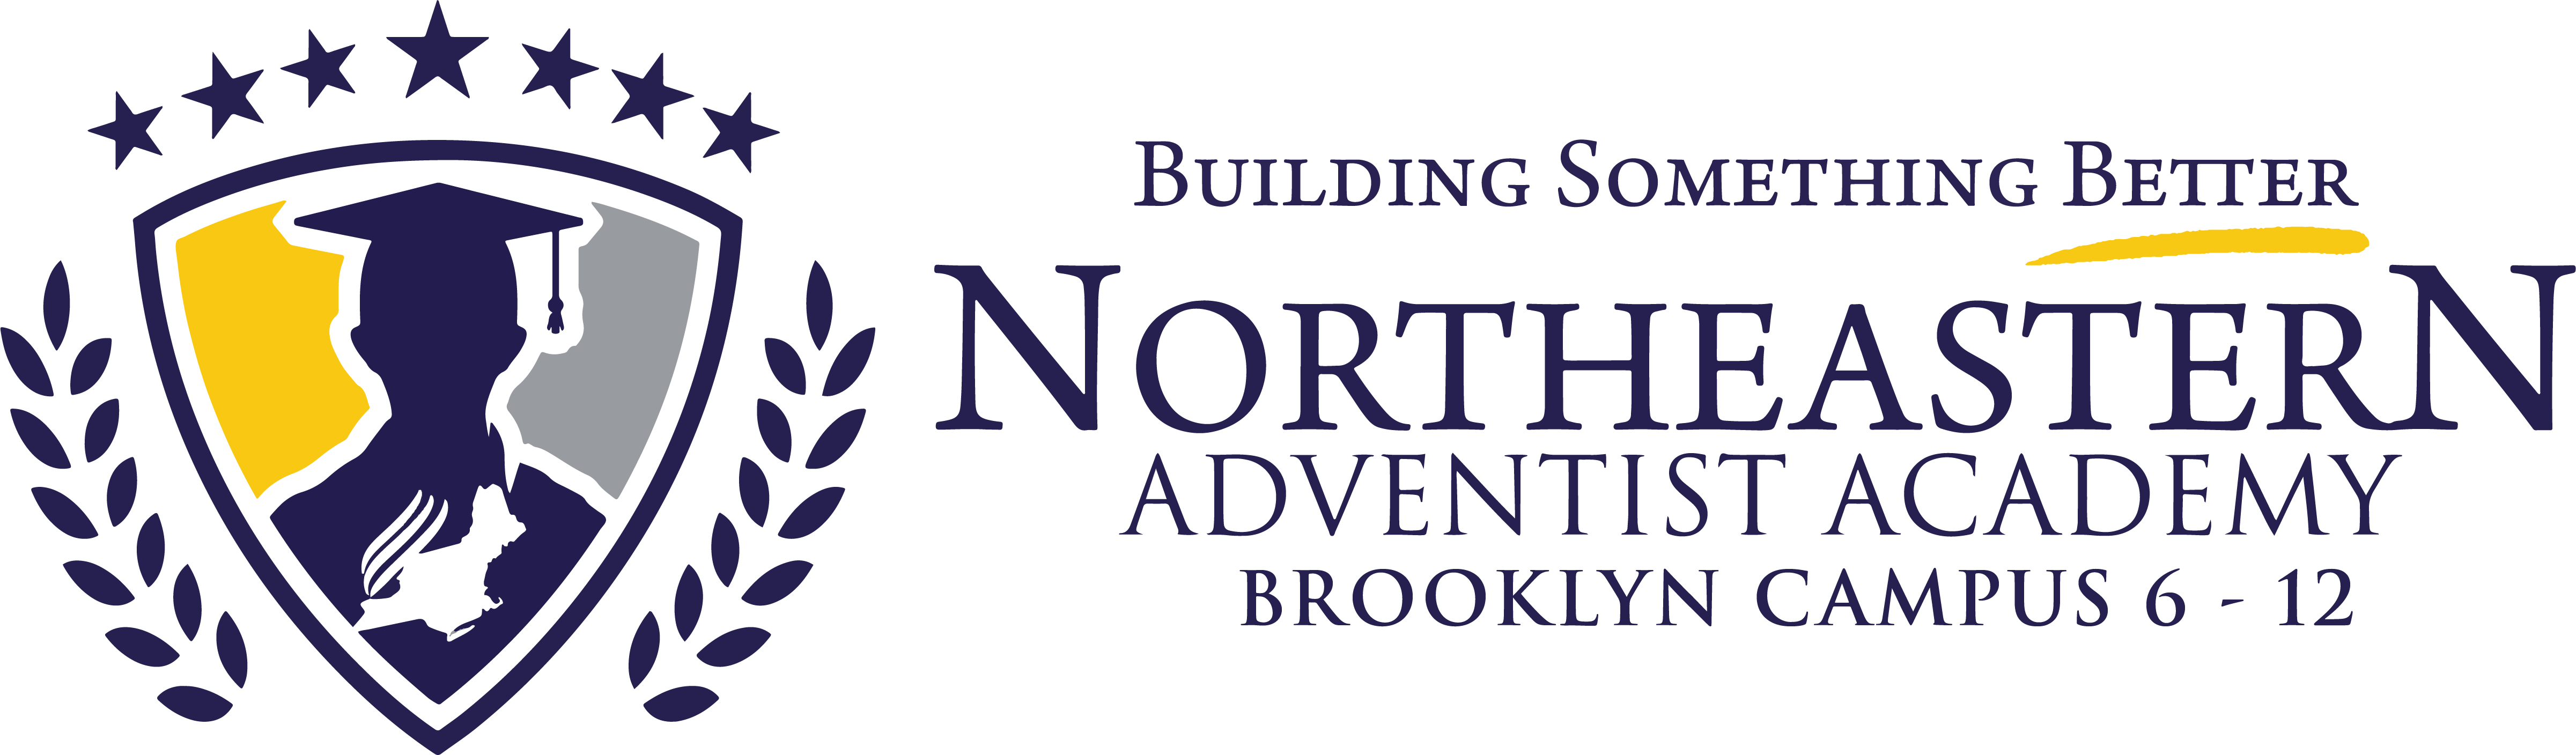 Northeastern Adventist Academy Brooklyn Campus 9 -12